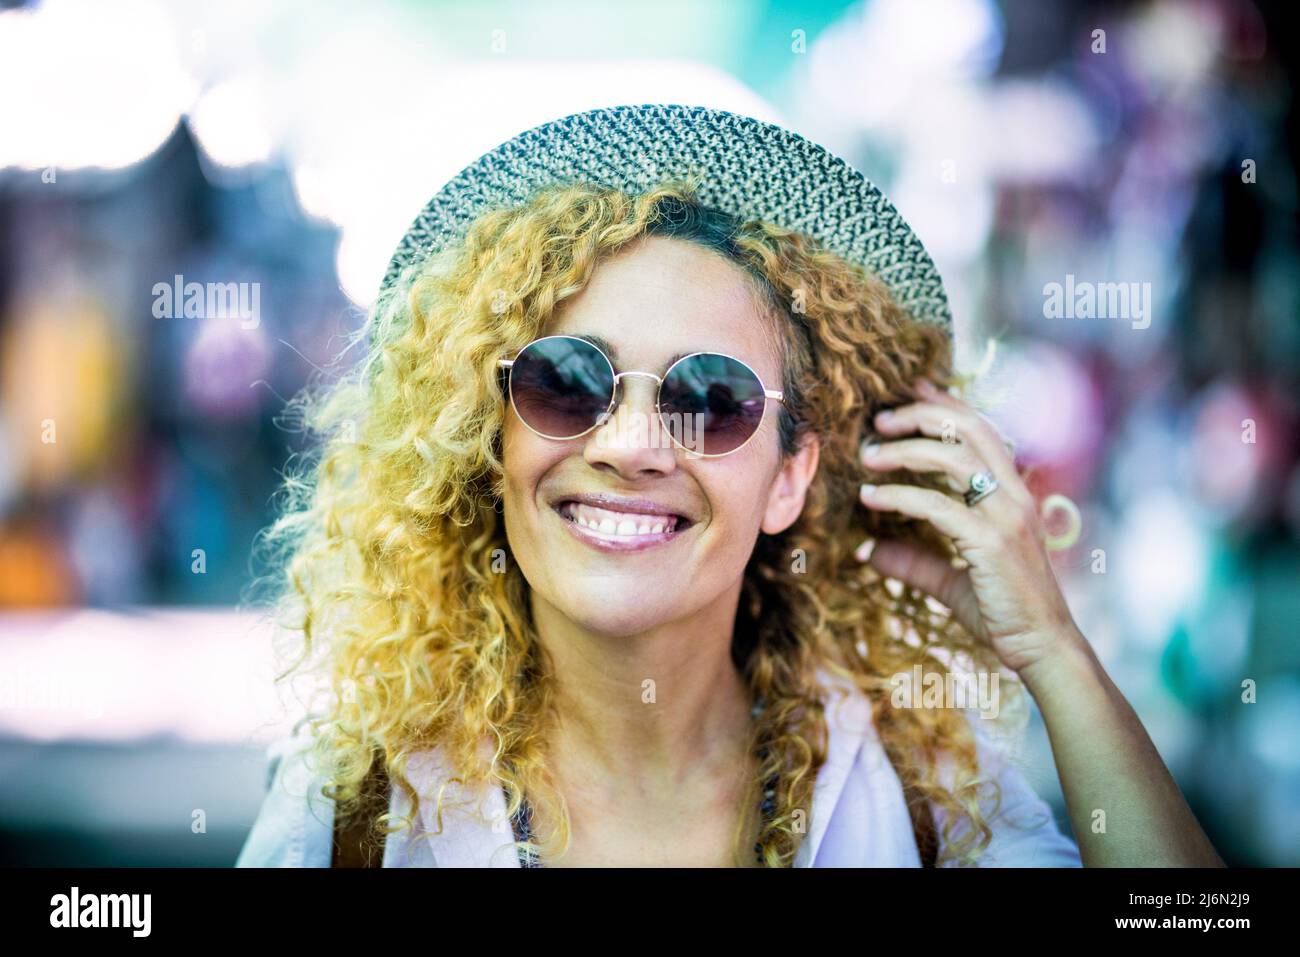 Allegro bello ritratto donna giovane con cappello alla moda e occhiali da sole godere di attività all'aperto di svago e guardando la macchina fotografica. Foto Stock